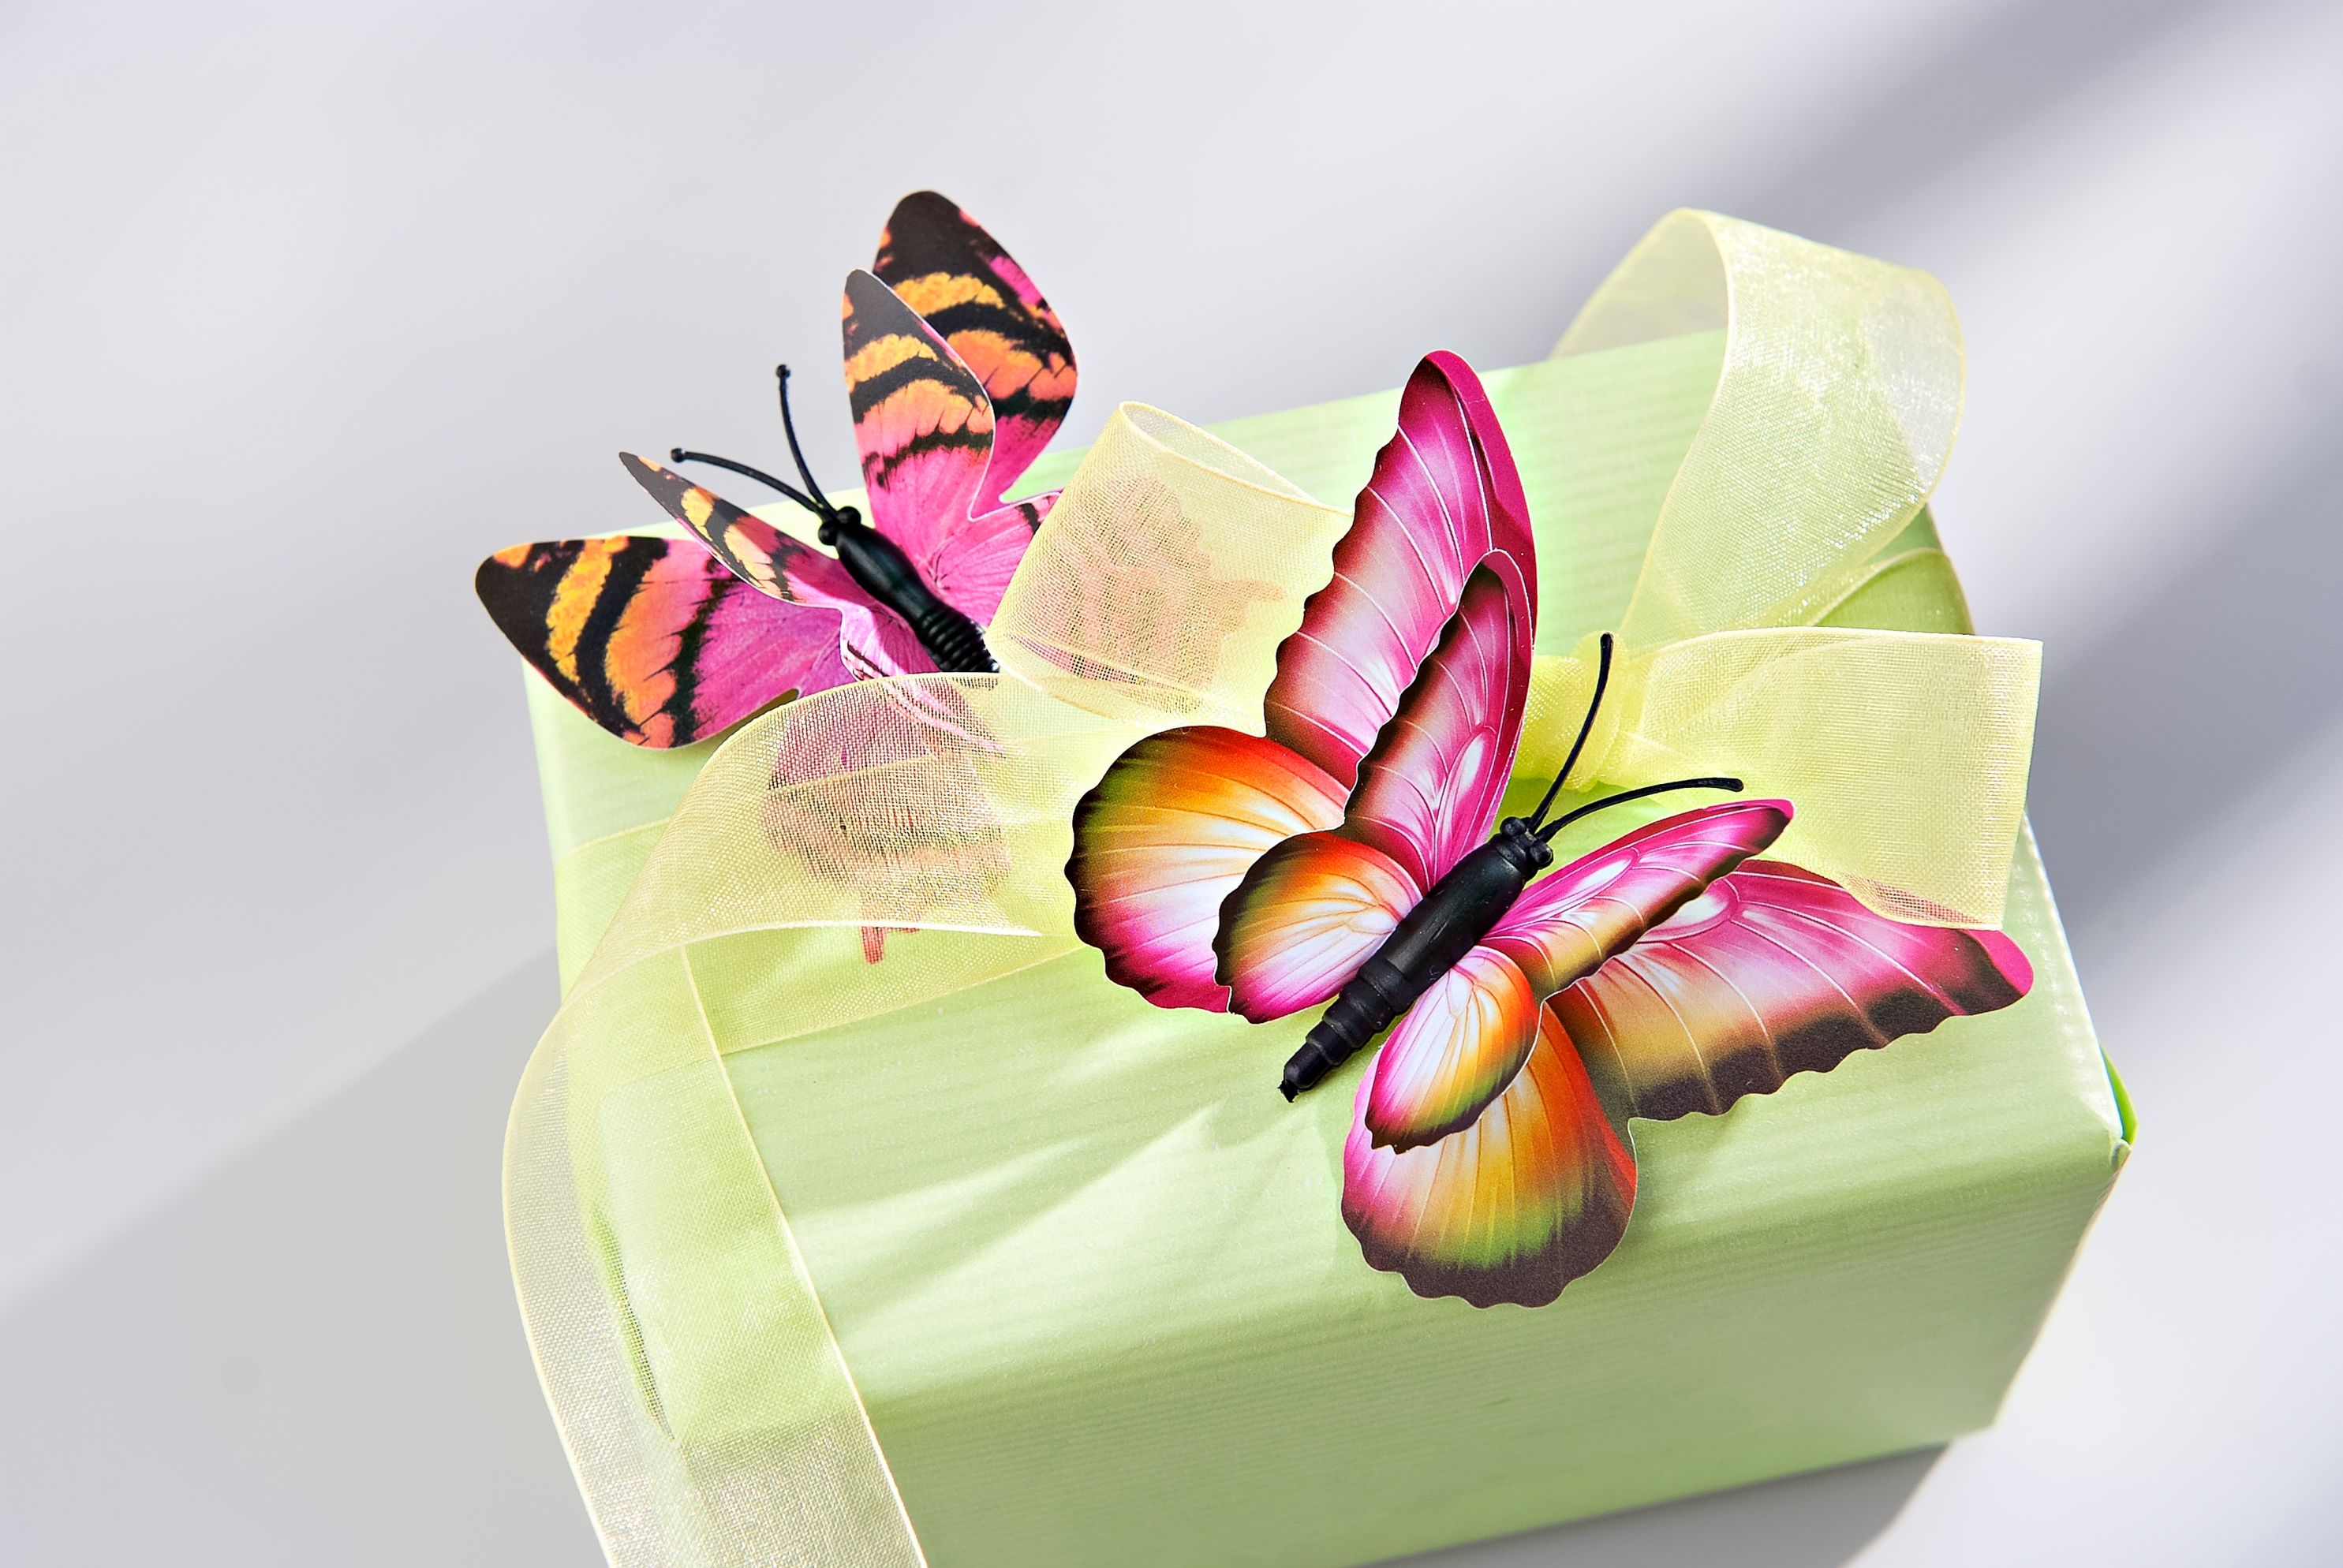 3D-Deko-Schmetterlinge, 24-teilig jetzt bei Weltbild.de bestellen